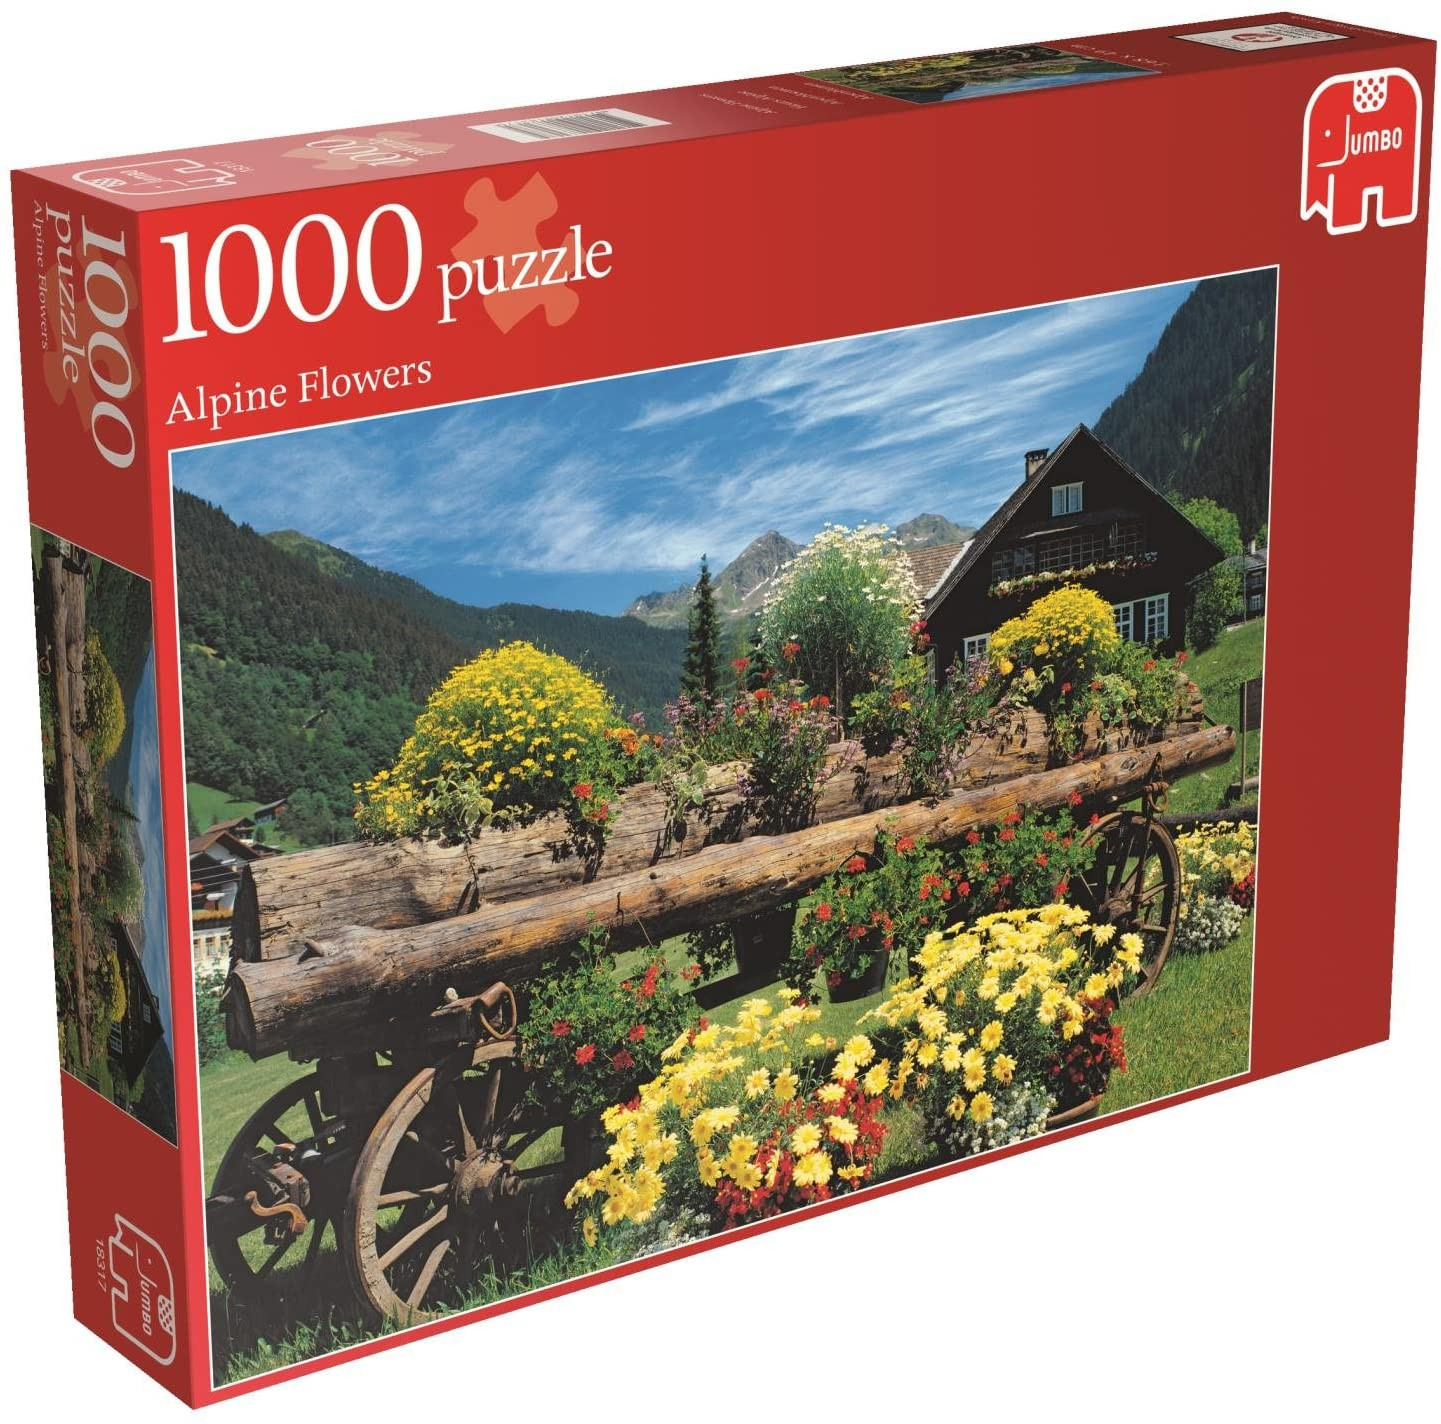 Puzzle 1000 pzs. PC Alpine Flowers